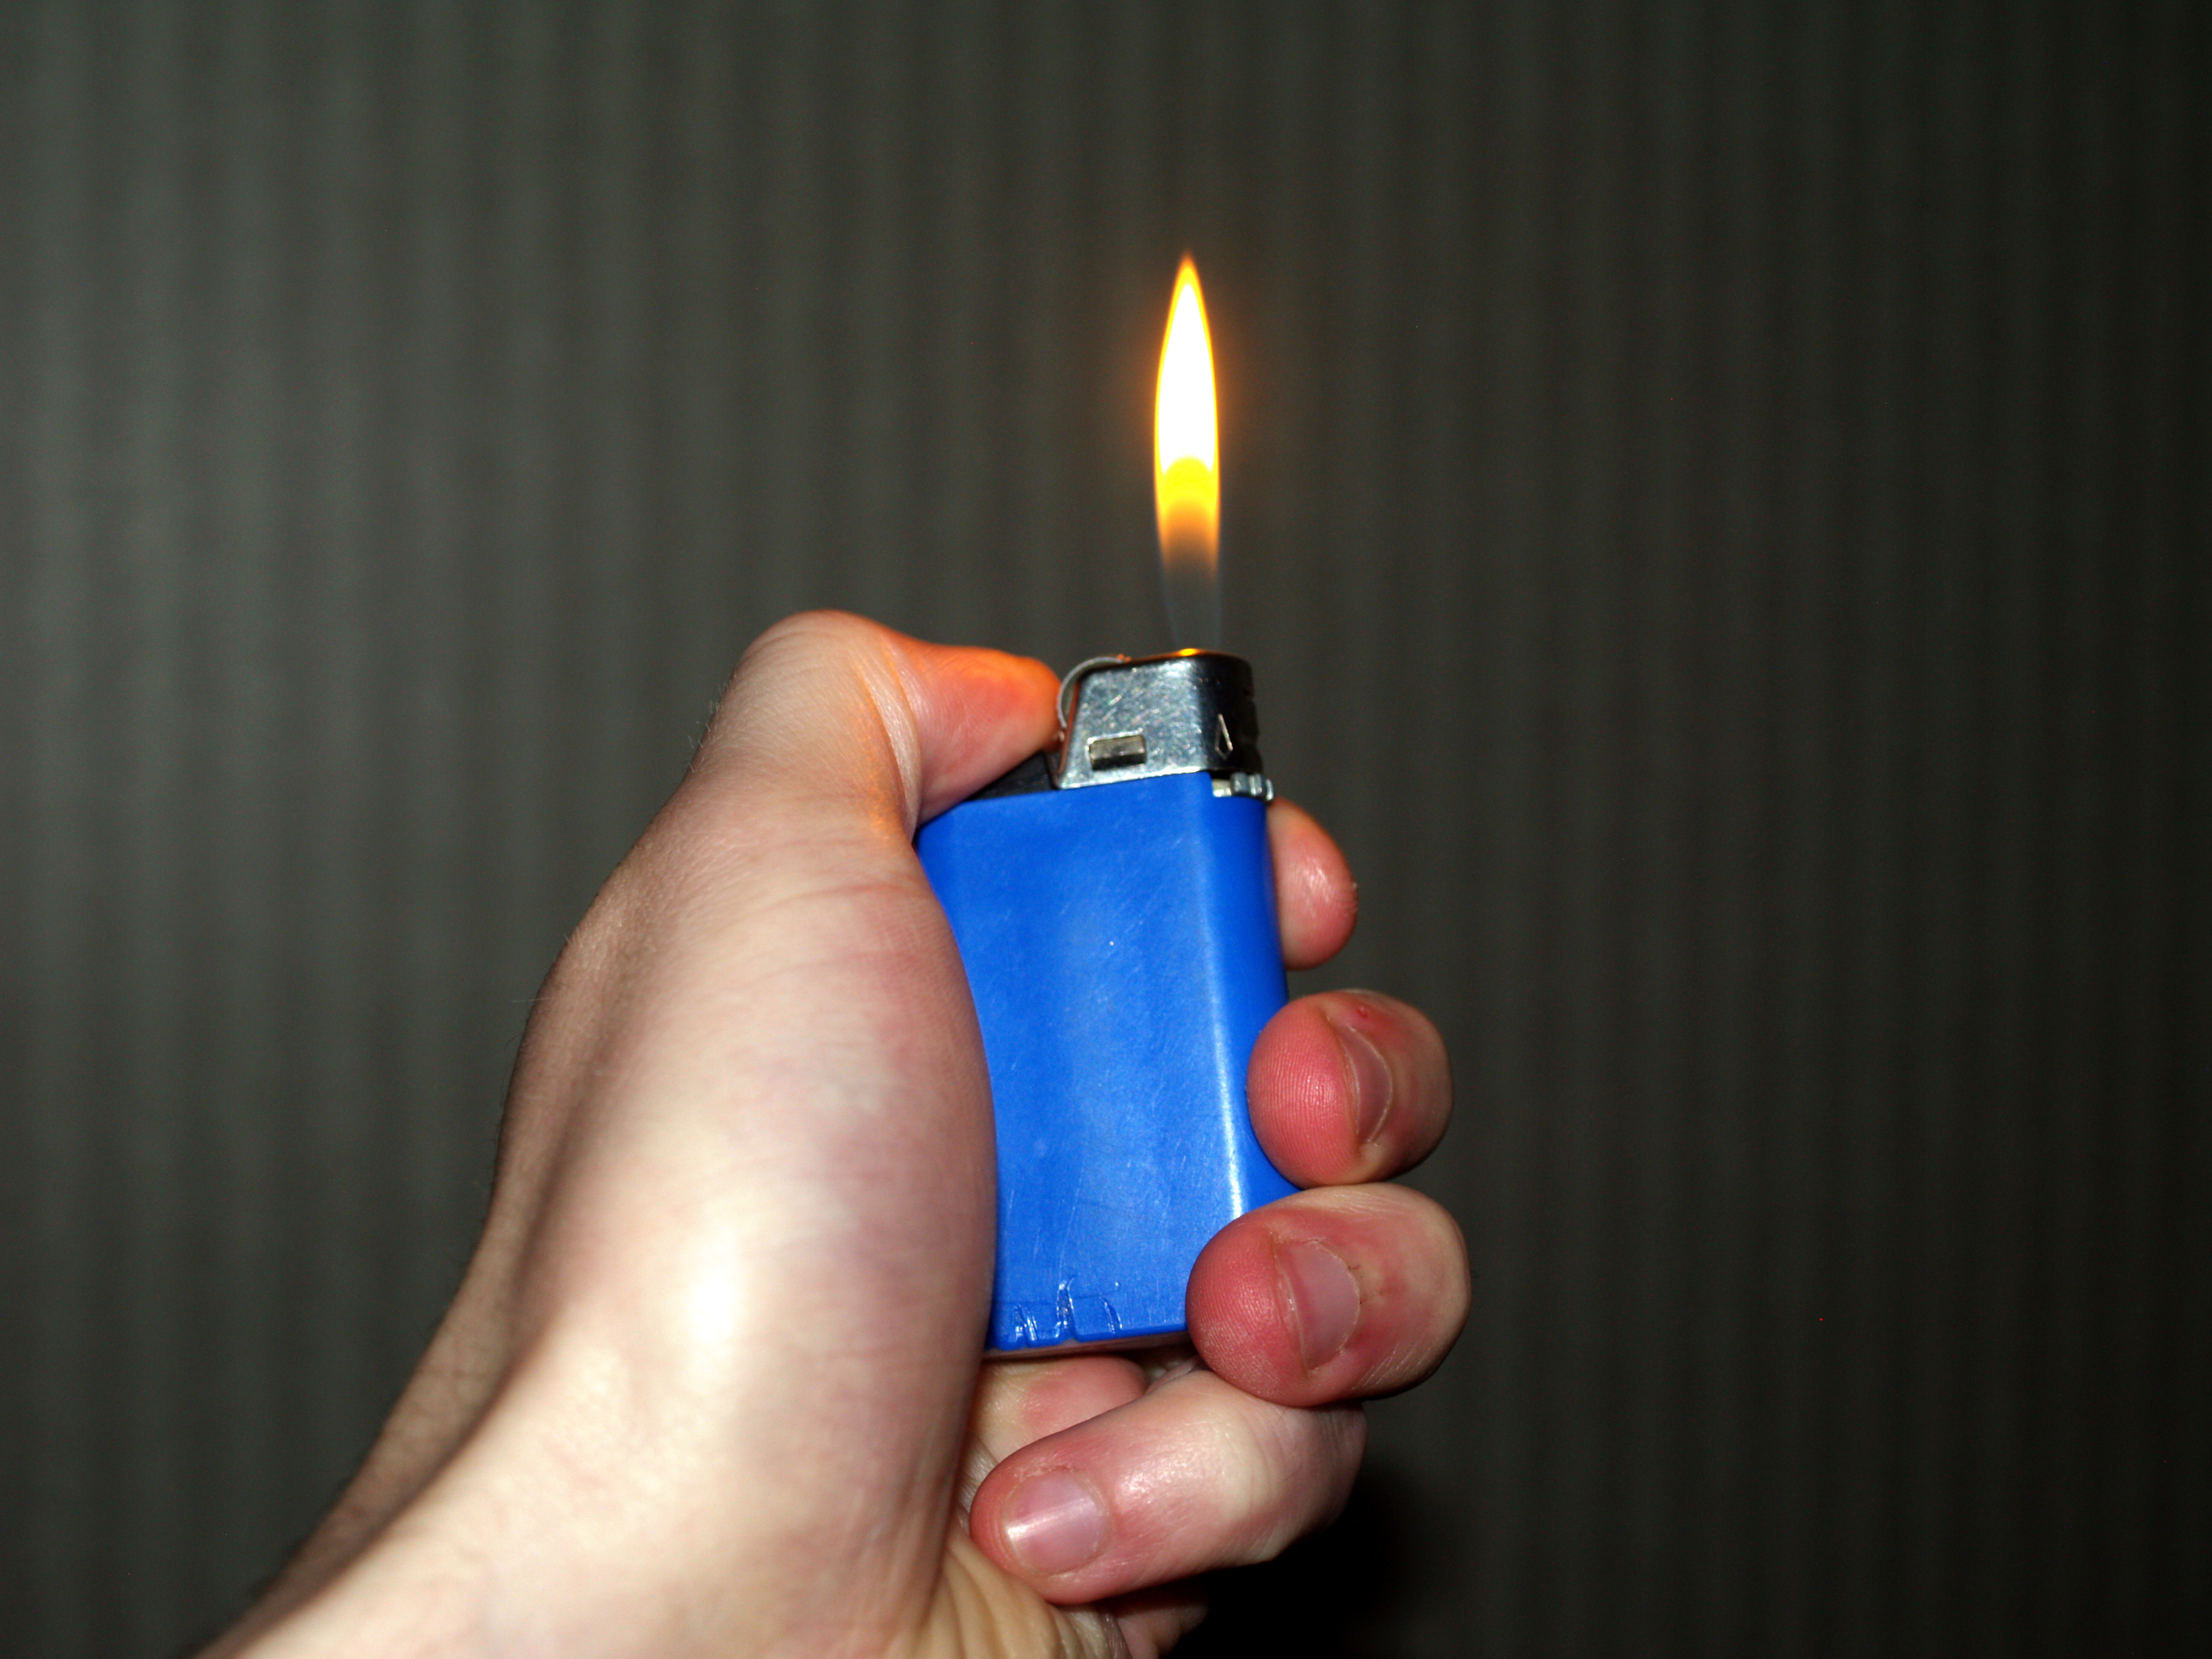 File:Hand holding burning lighter.jpg - Wikimedia Commons